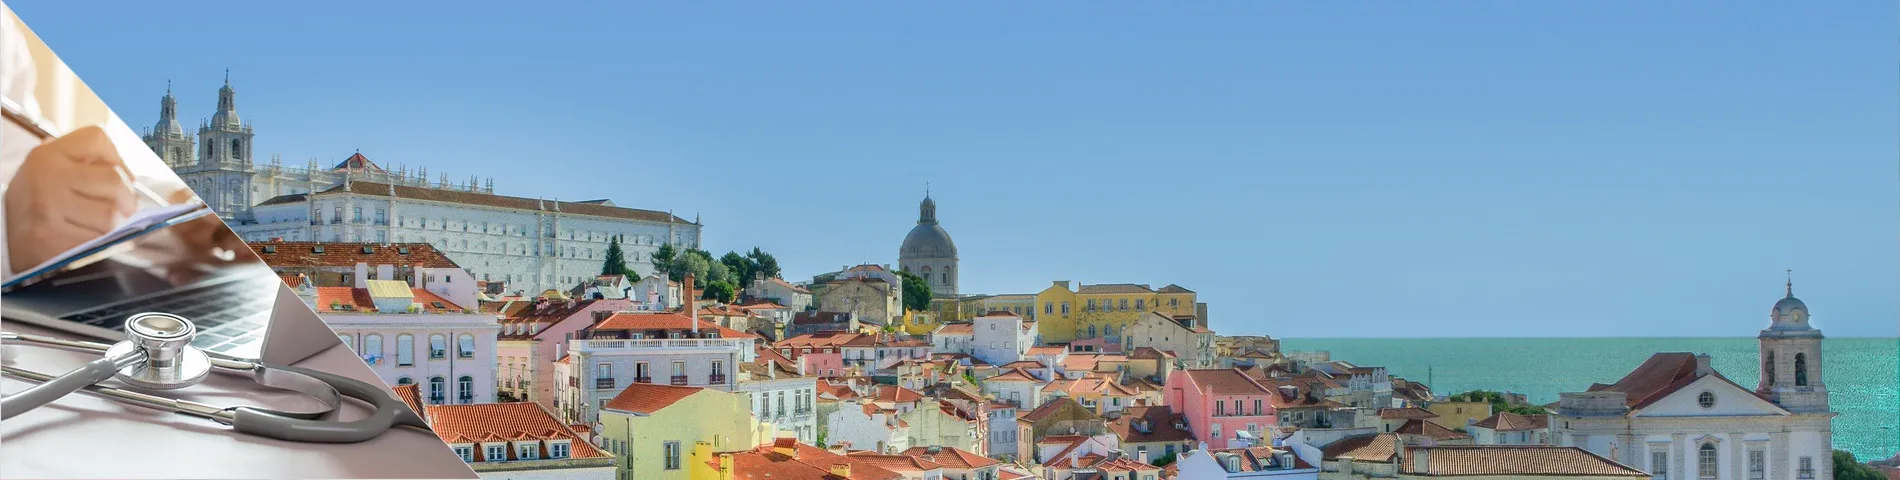 Lissabon - Portugali lääkäreille ja sairaanhoitajille